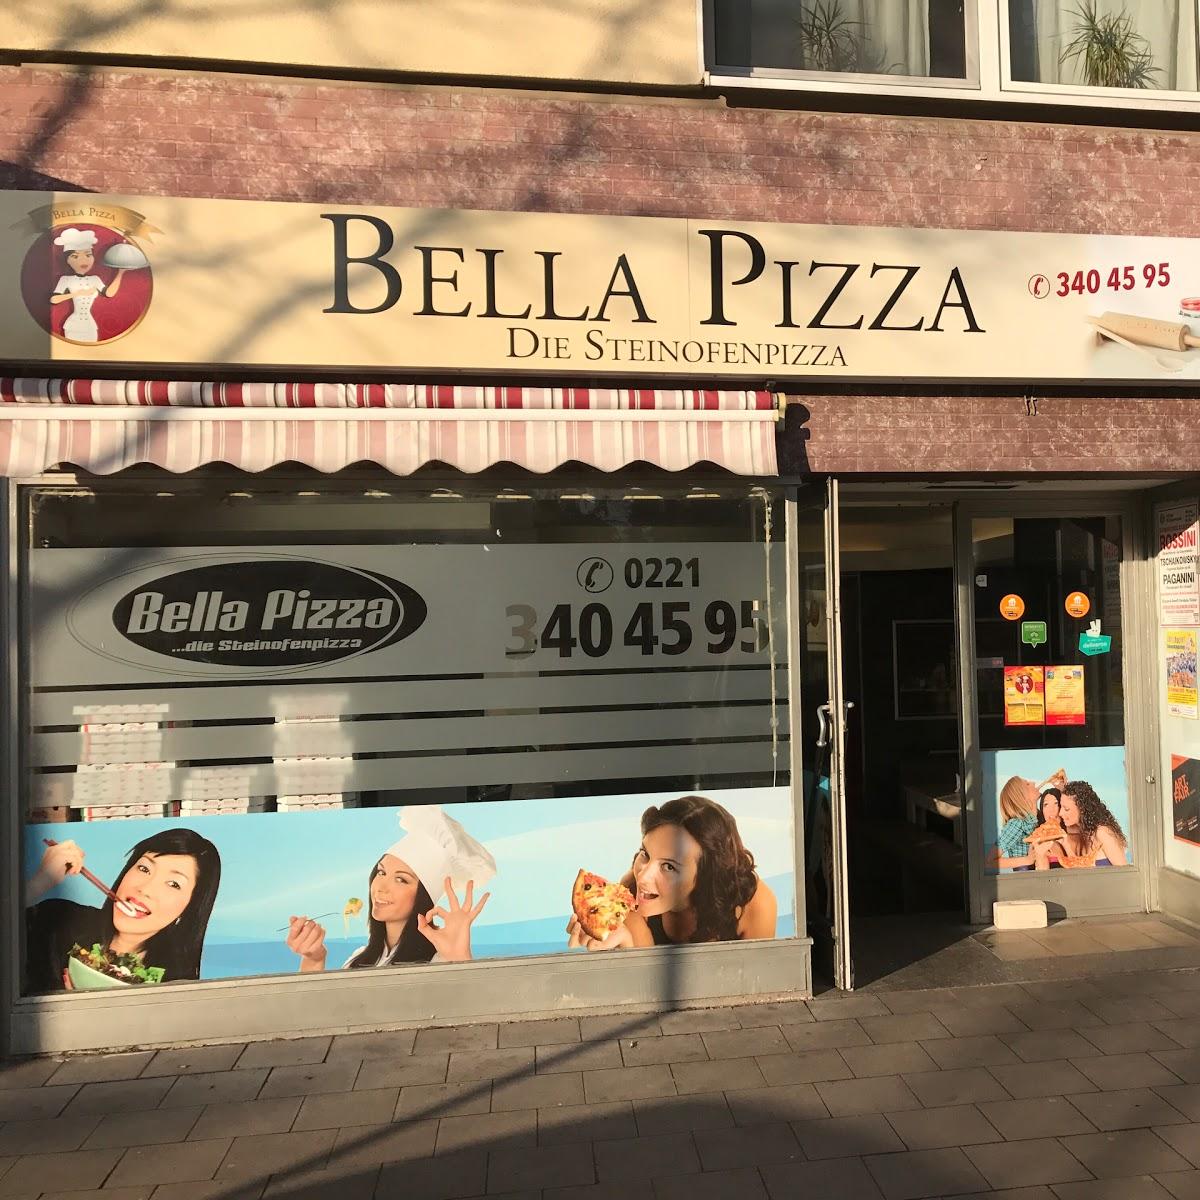 Restaurant "Bella Pizza - Die Steinofen Pizza" in Köln